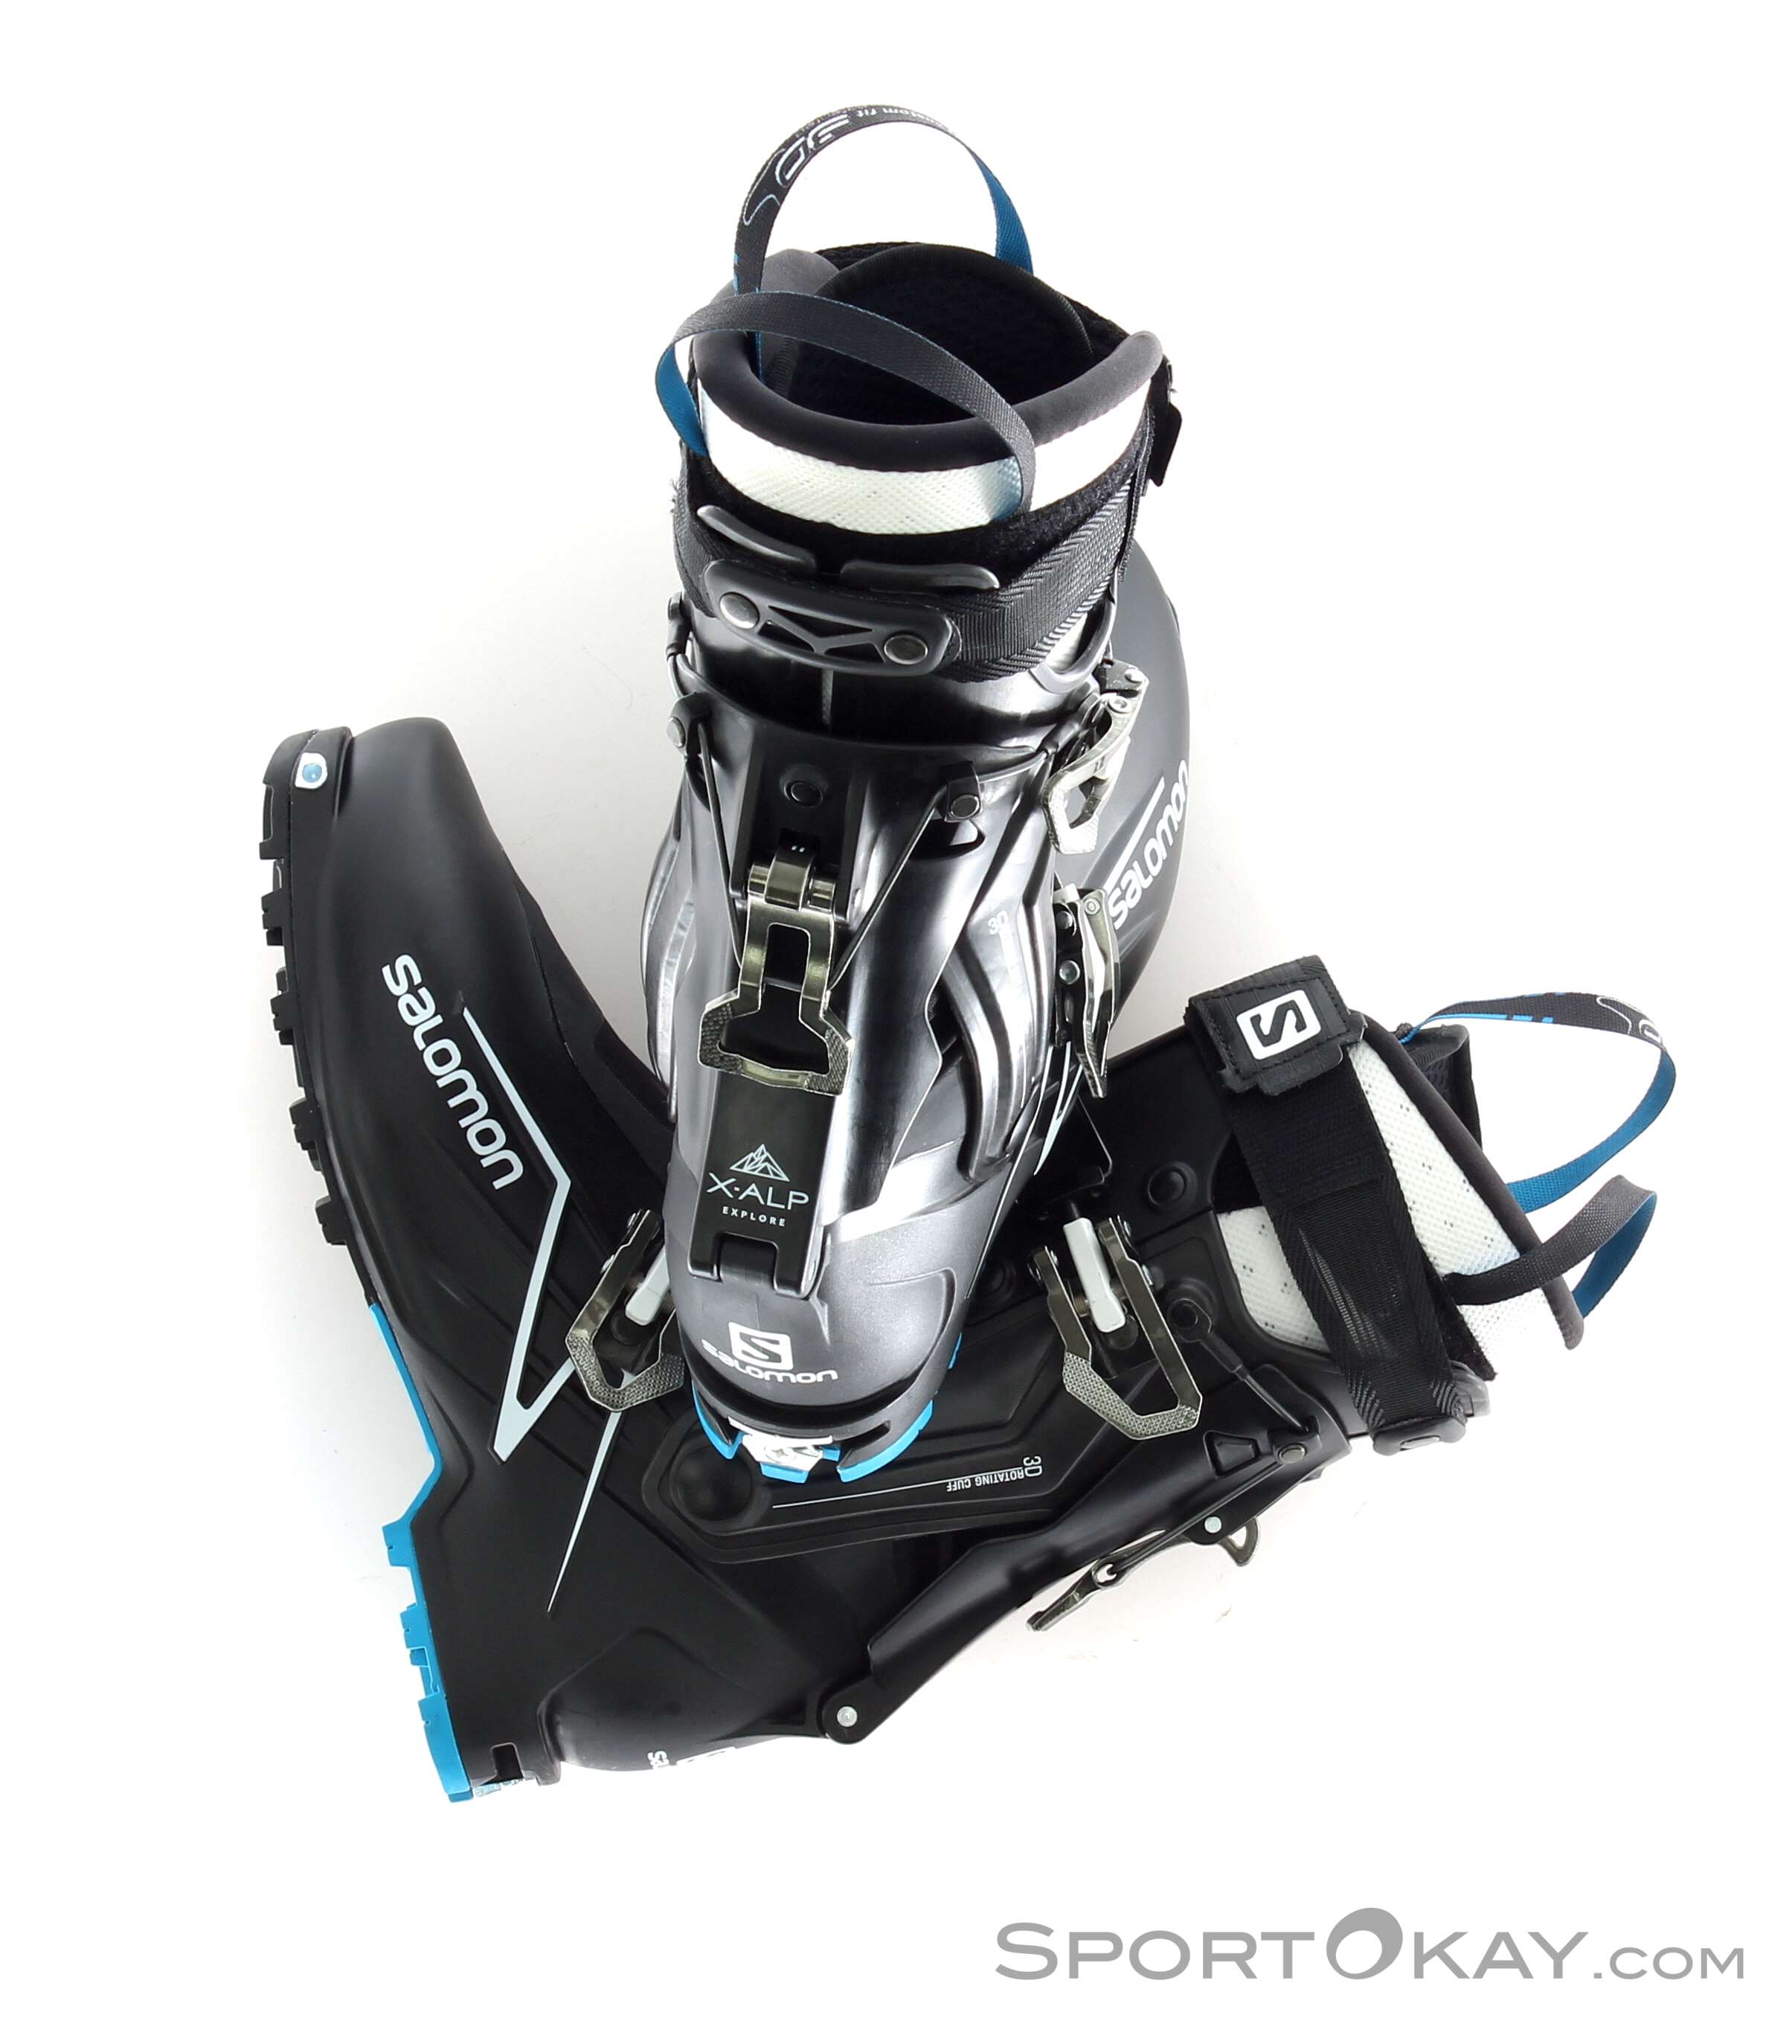 Salomon X-Alp Explore Ski Touring Boots Ski Touring Boots Ski Touring  Boots Ski Touring All